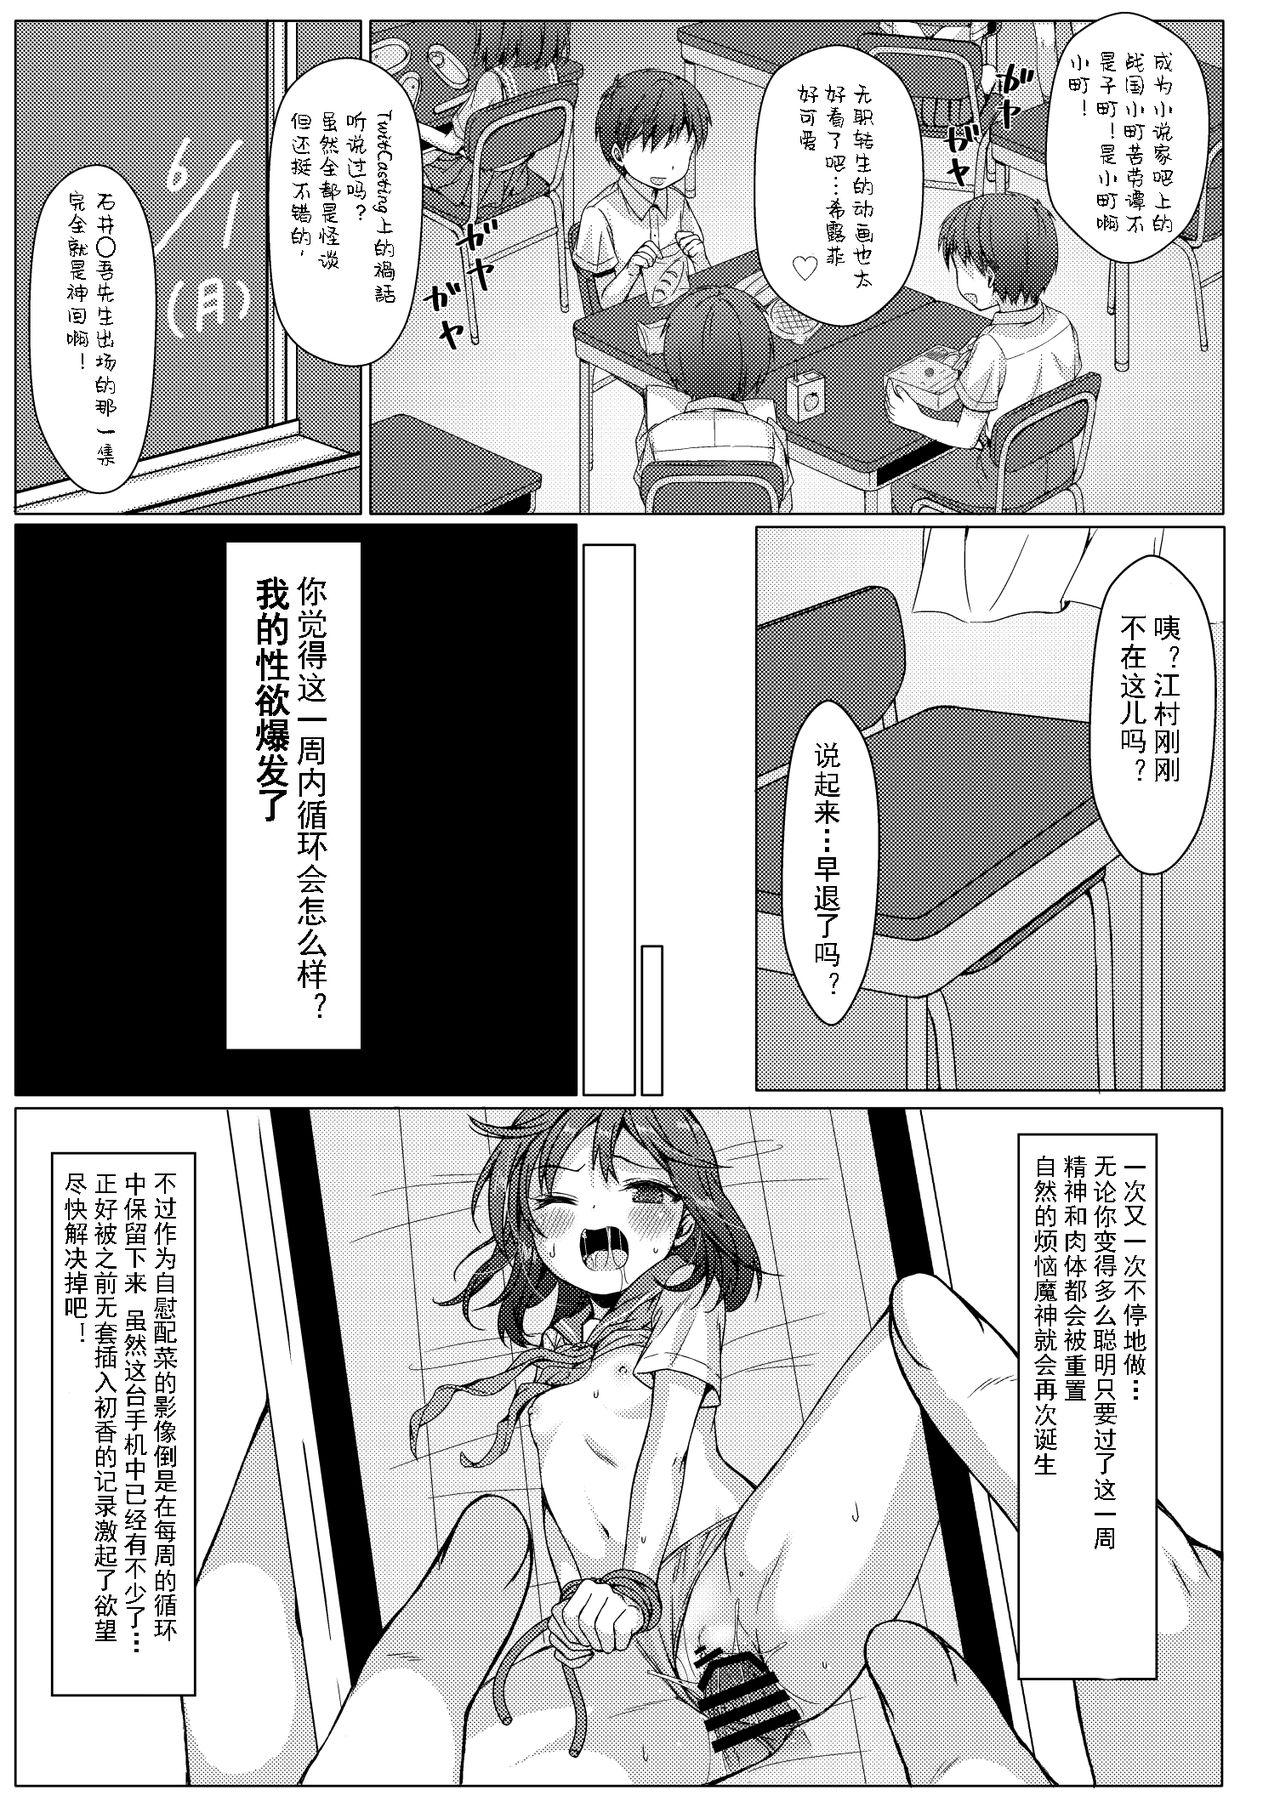 Playing Isshuukan de Mugen Loop Shiteru to Kigatsuita kara, Kounai ni Yaribeya Tsukutta! 2 - Original Pregnant - Page 3